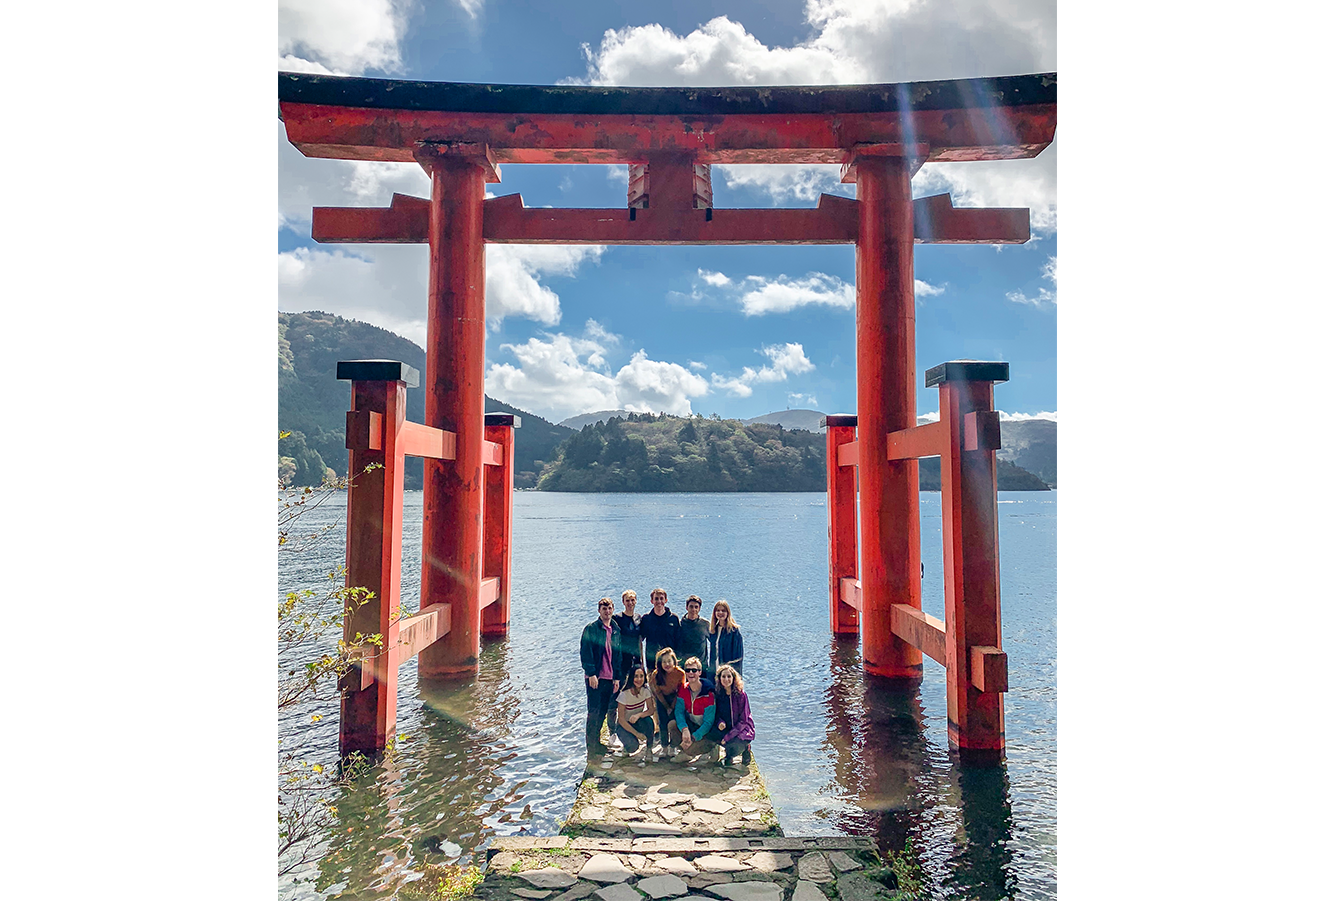 Japan photo at water's edge